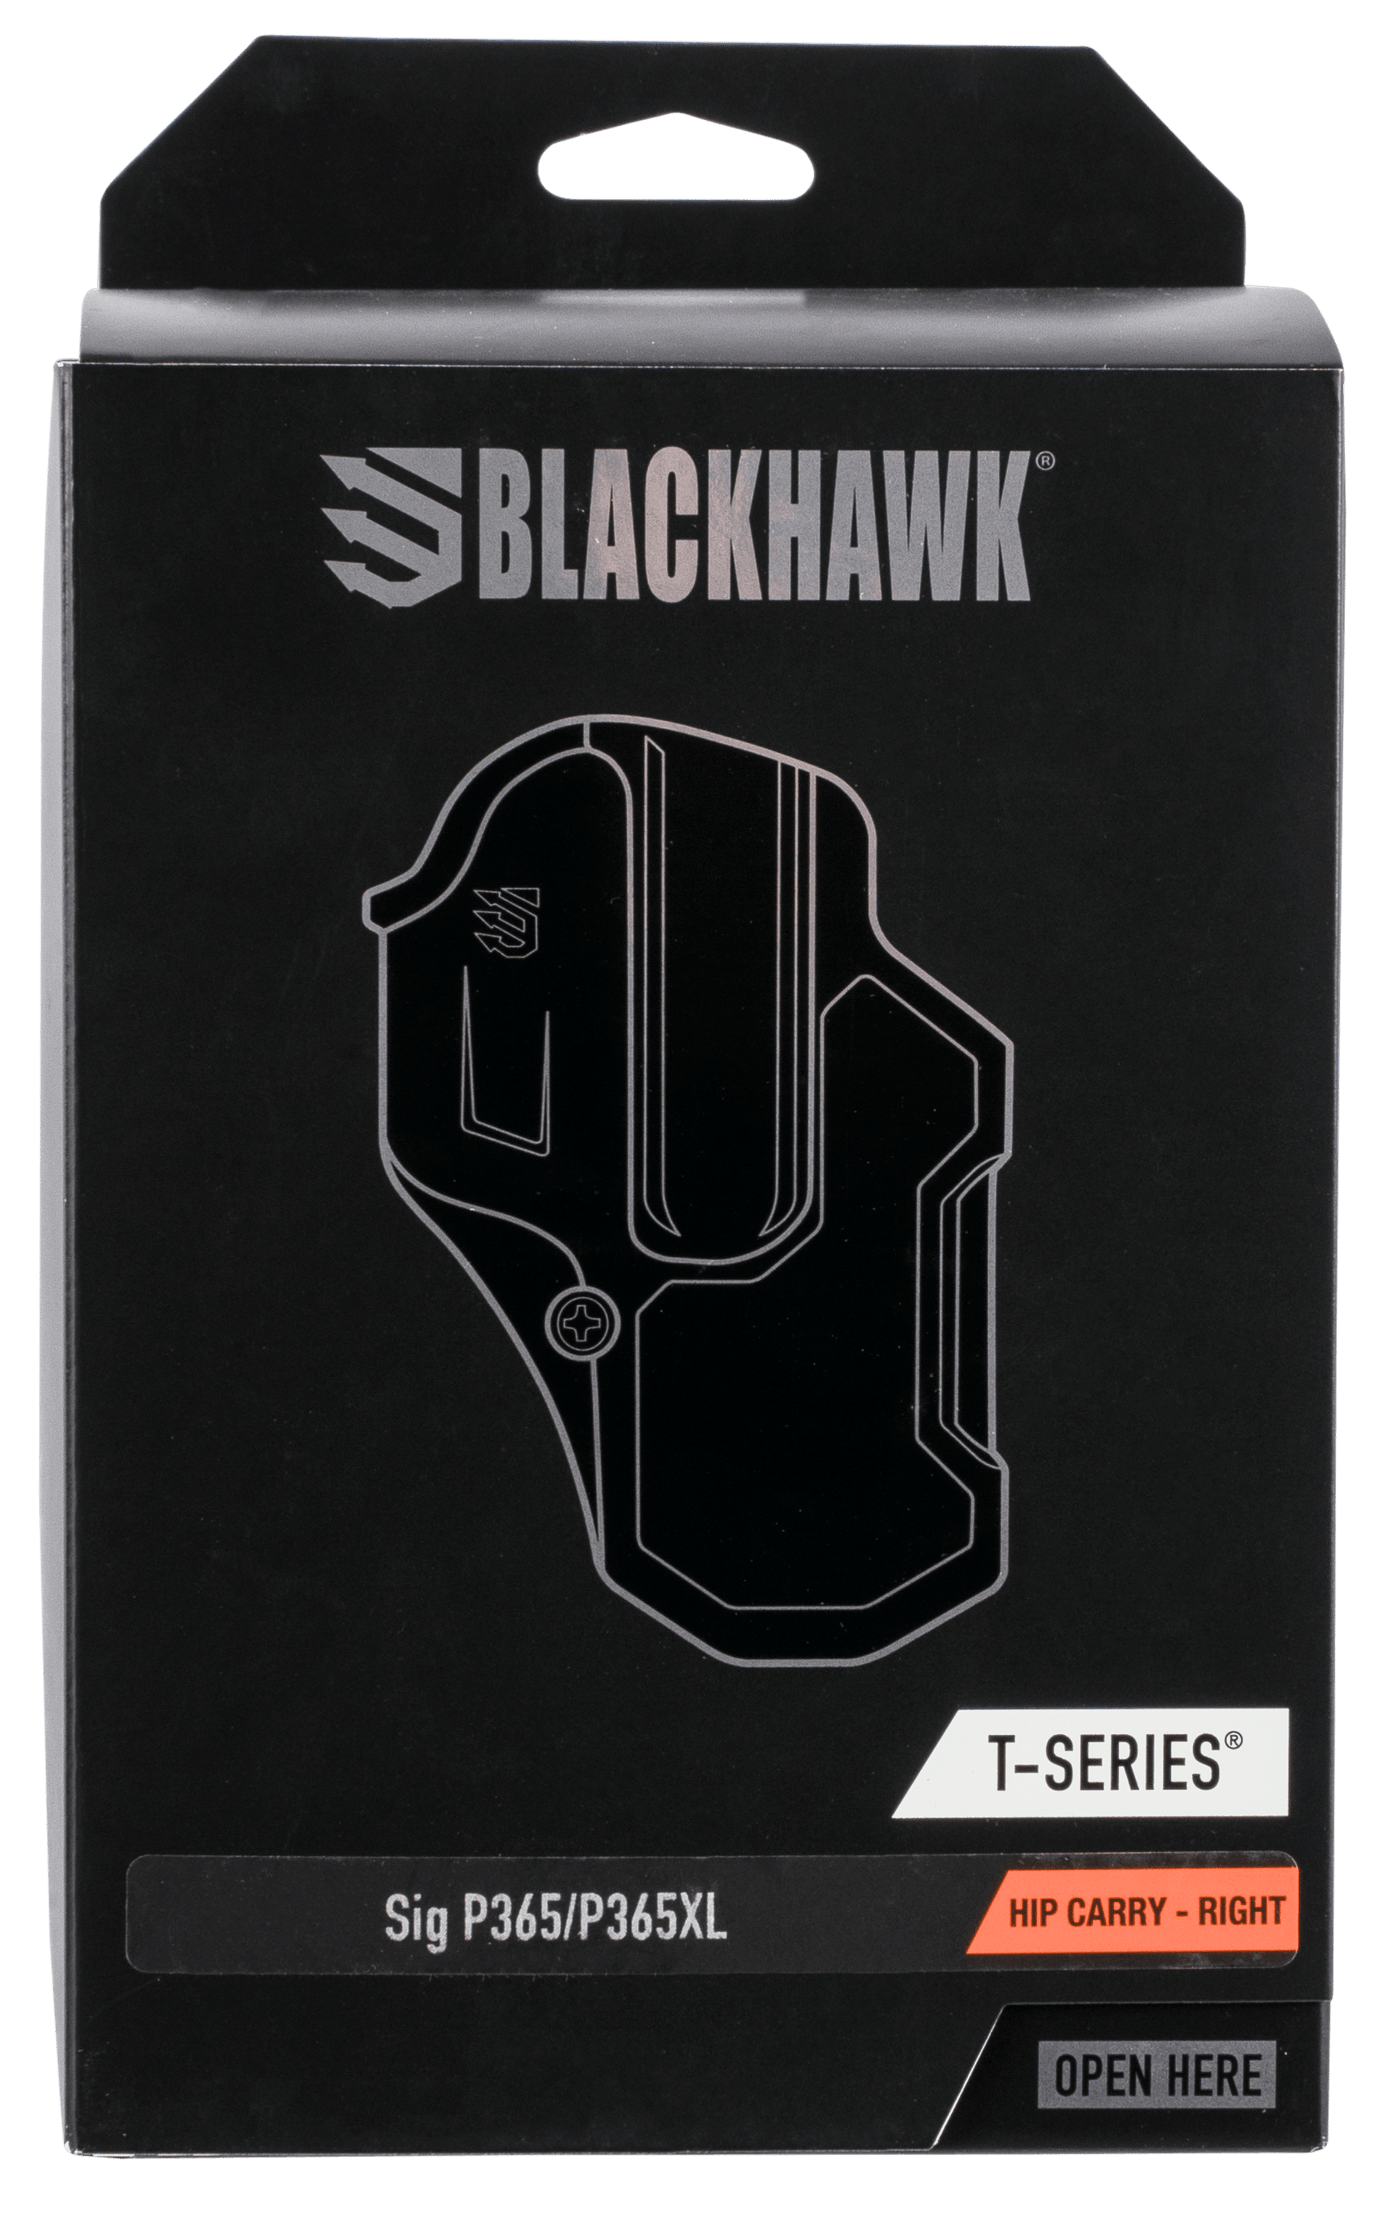 BLACKHAWK Bh T-series L2c P365/p365xl Rh Blk Holsters